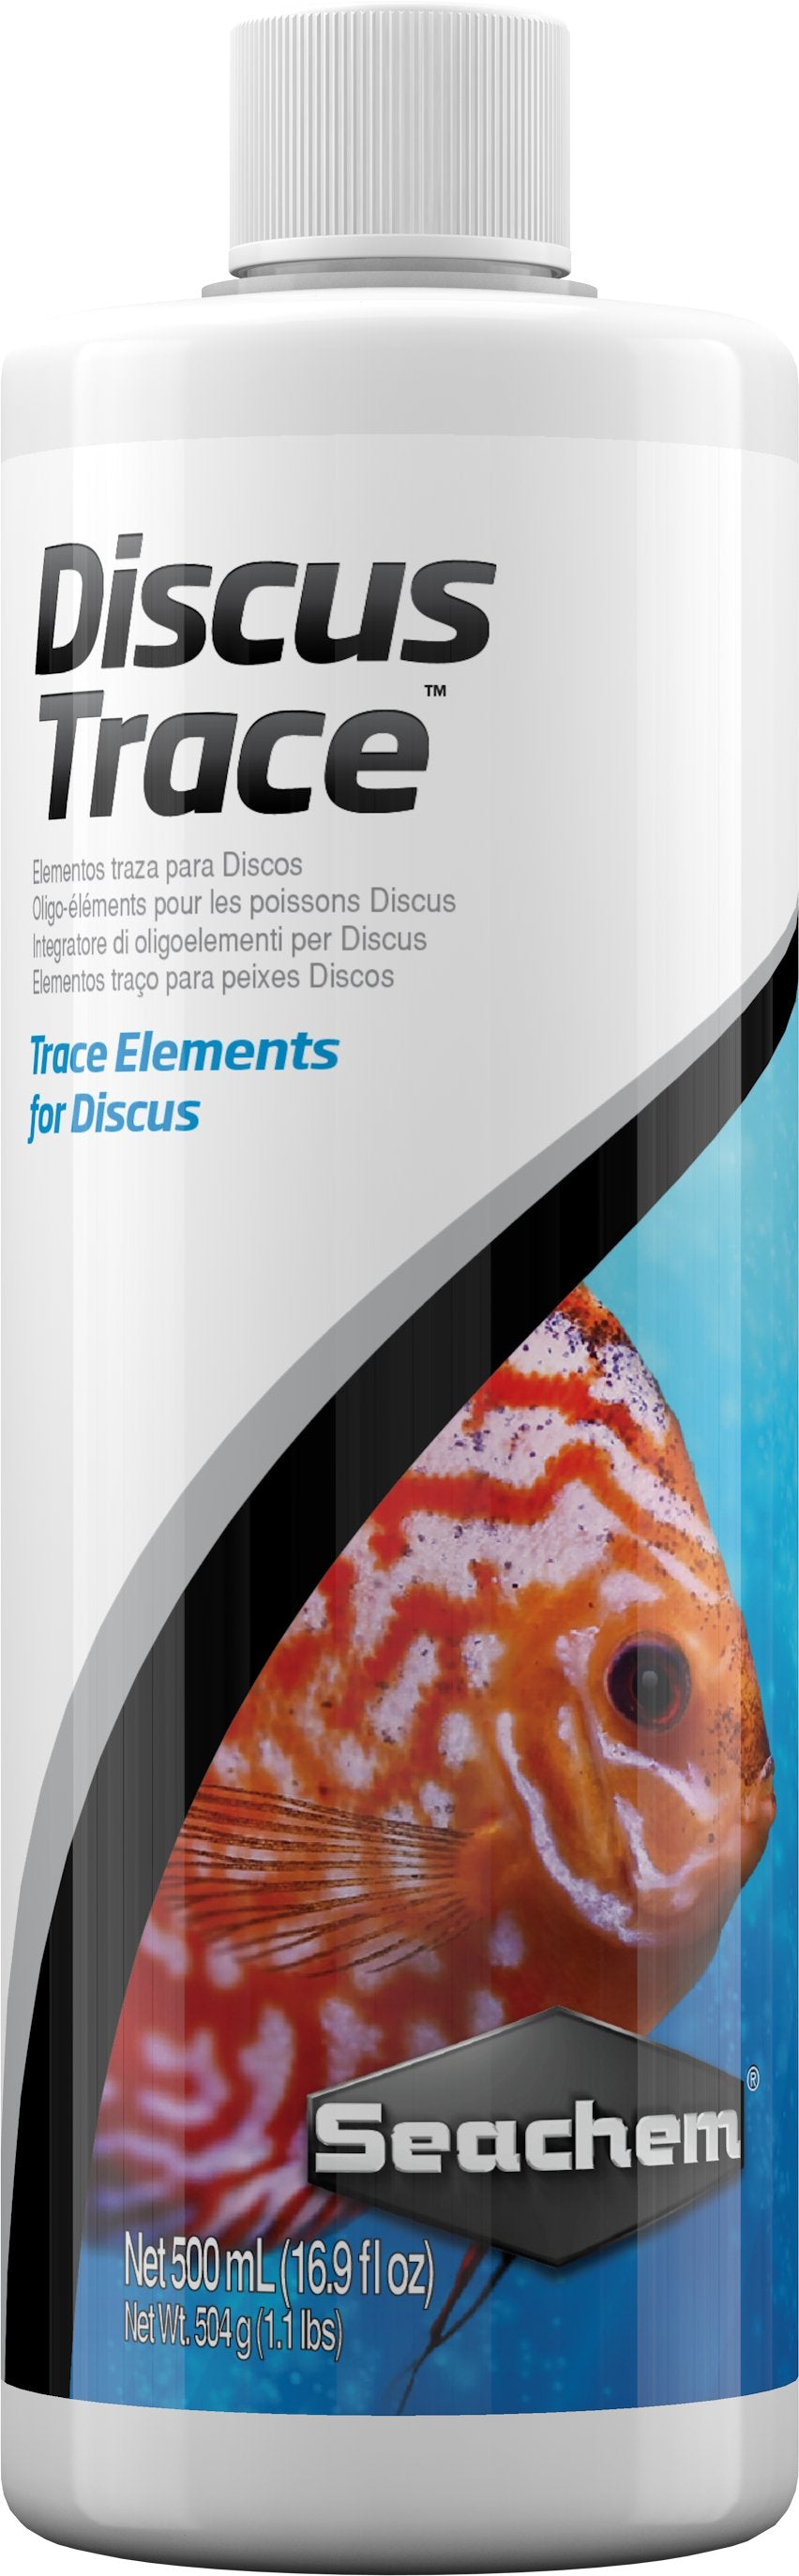 Discus Trace - Discus Roa Fish